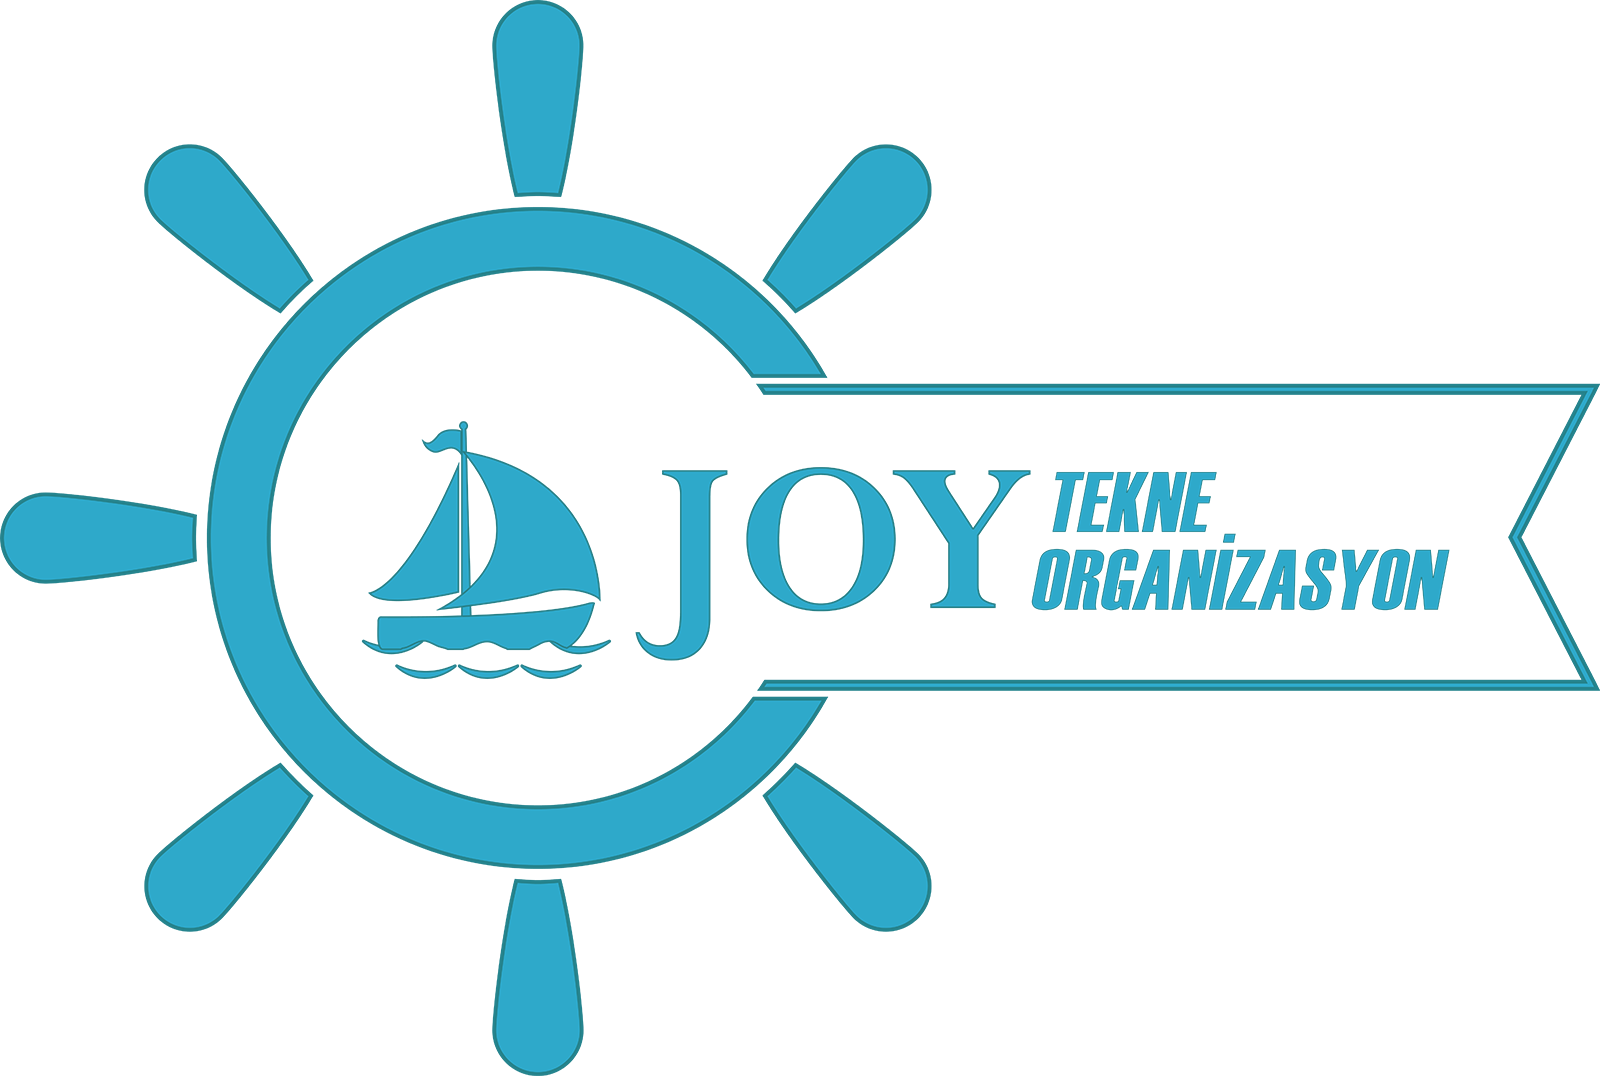 Joy Tekne Organizasyon